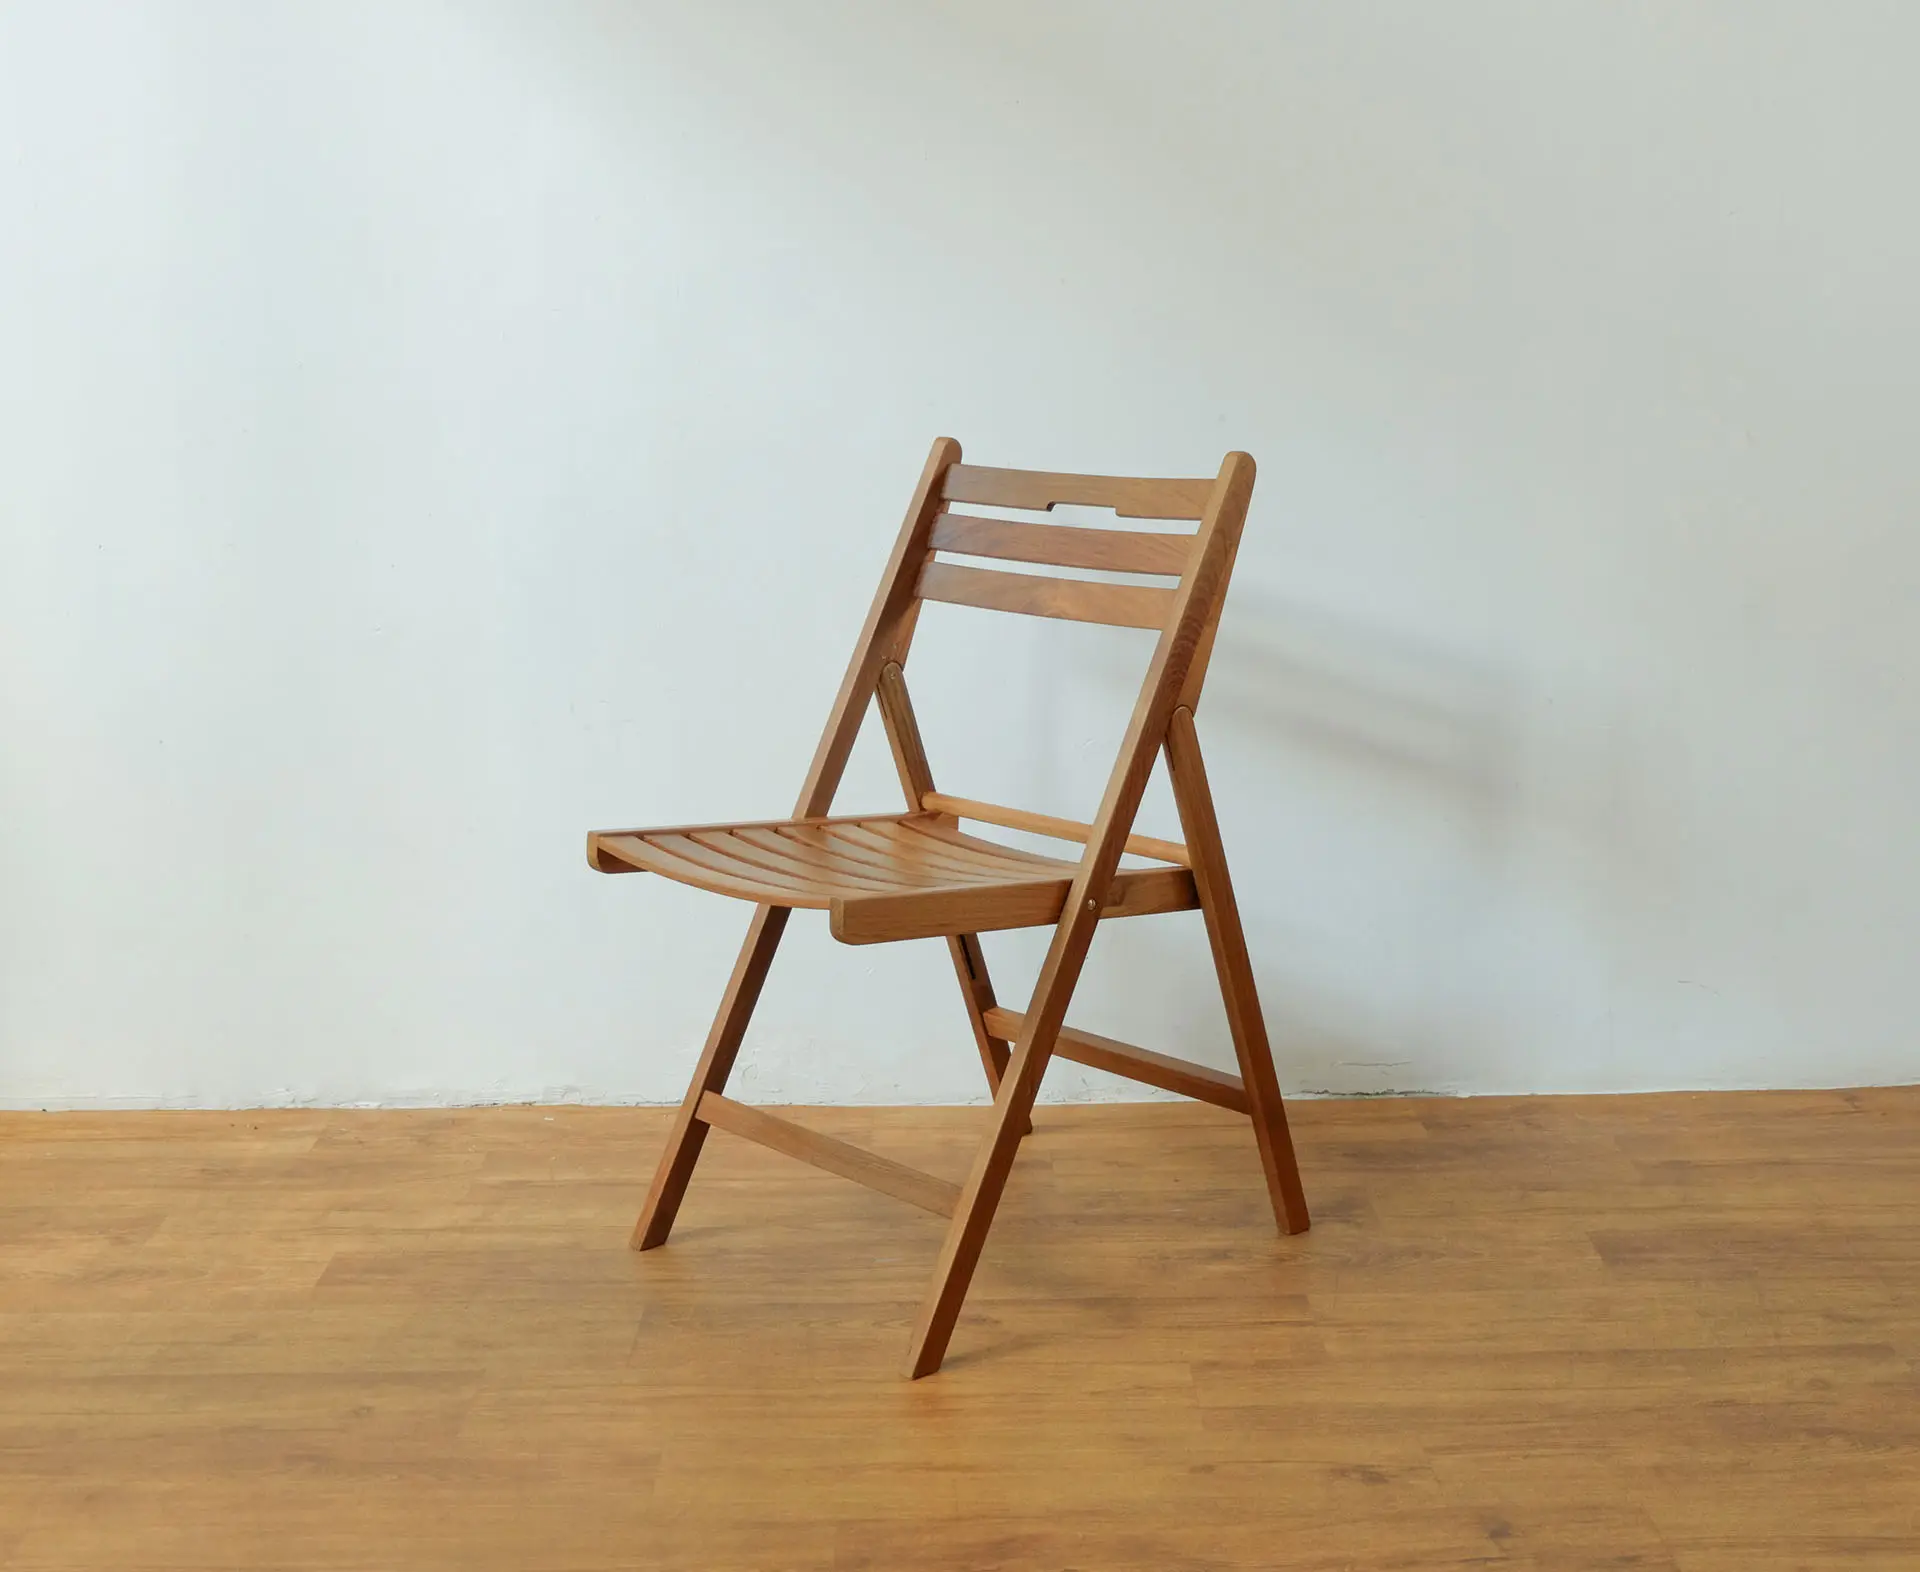 Barato abita silla plegable de madera de teca maciza para uso al aire libre muebles de playa y jardín Muebles impermeables hechos a mano